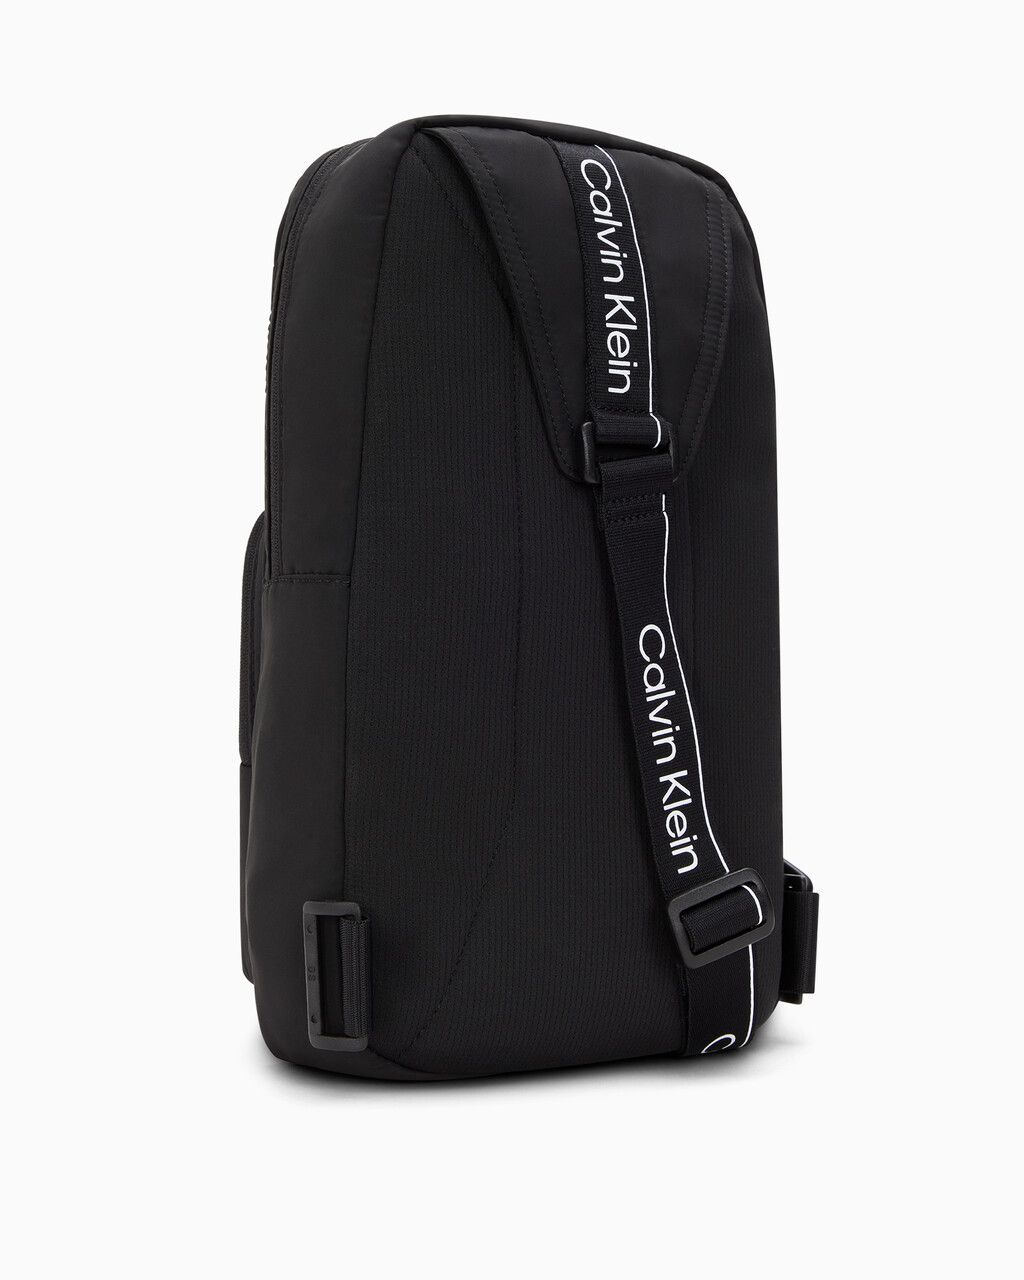 Modern Sport Sling Bag, BLACK BEAUTY, hi-res